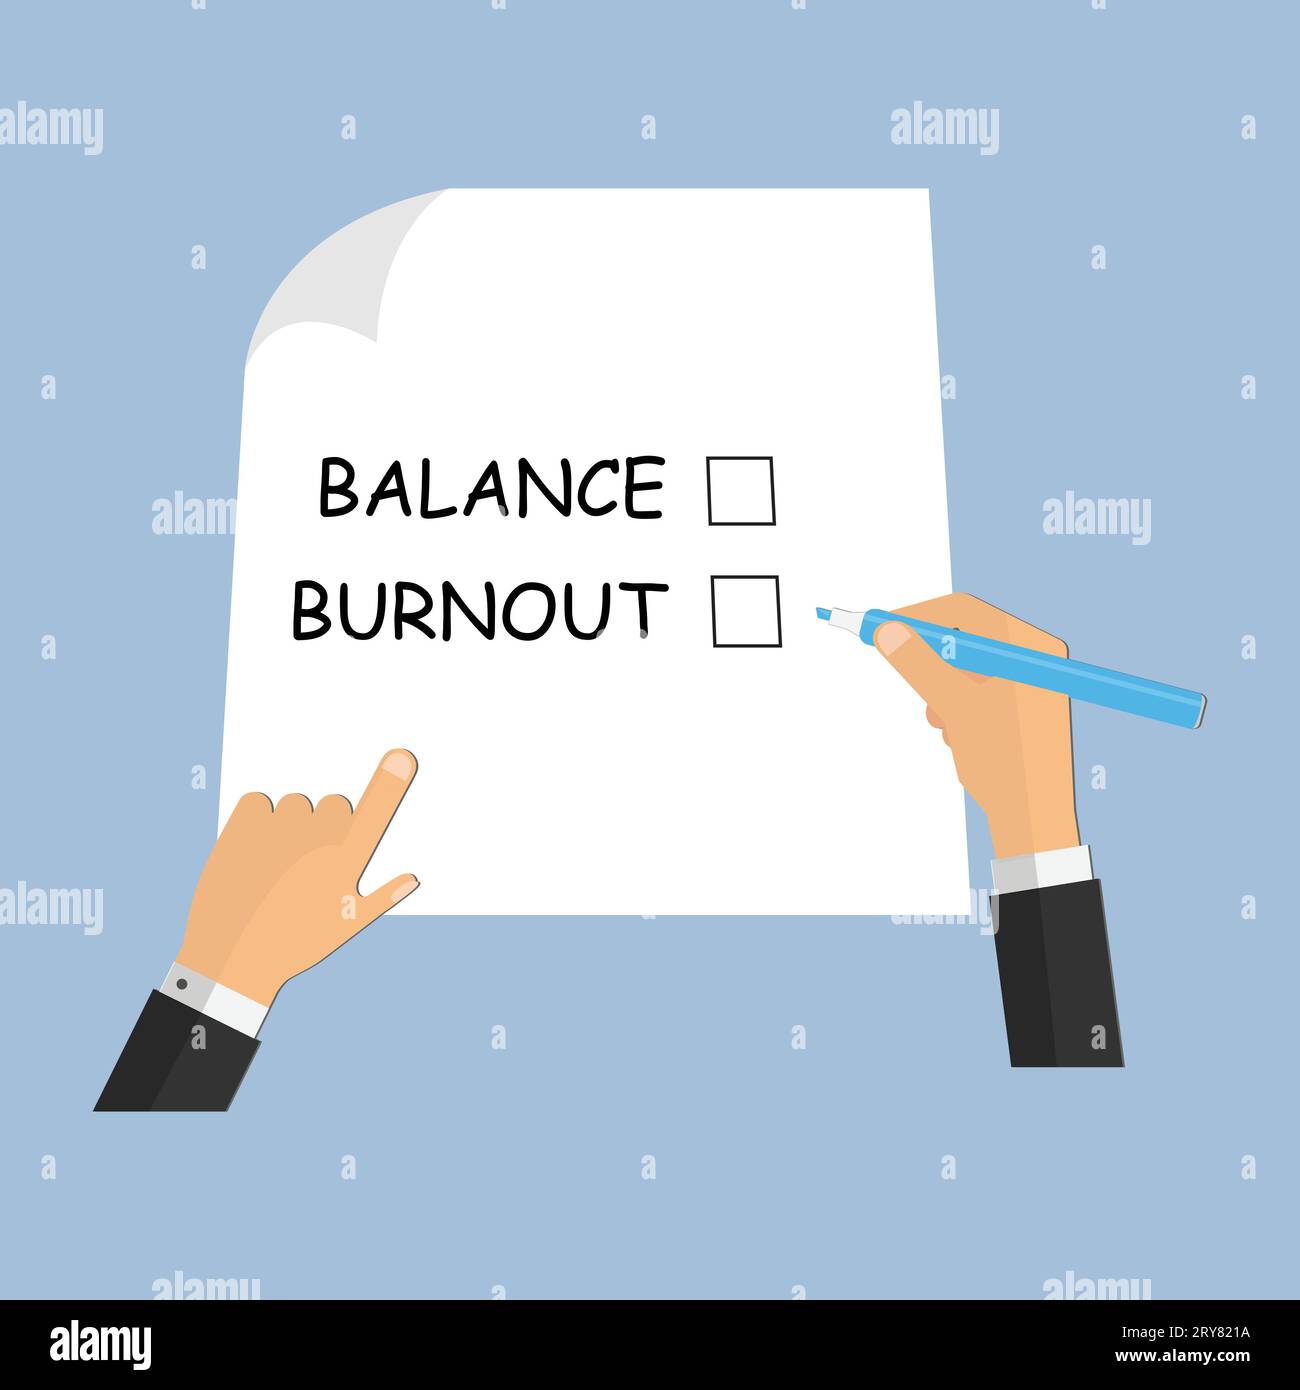 Halten Sie den Stift bereit, um eine Checkliste auf Papier mit den Worten Burnout und Balance auszufüllen Stock Vektor